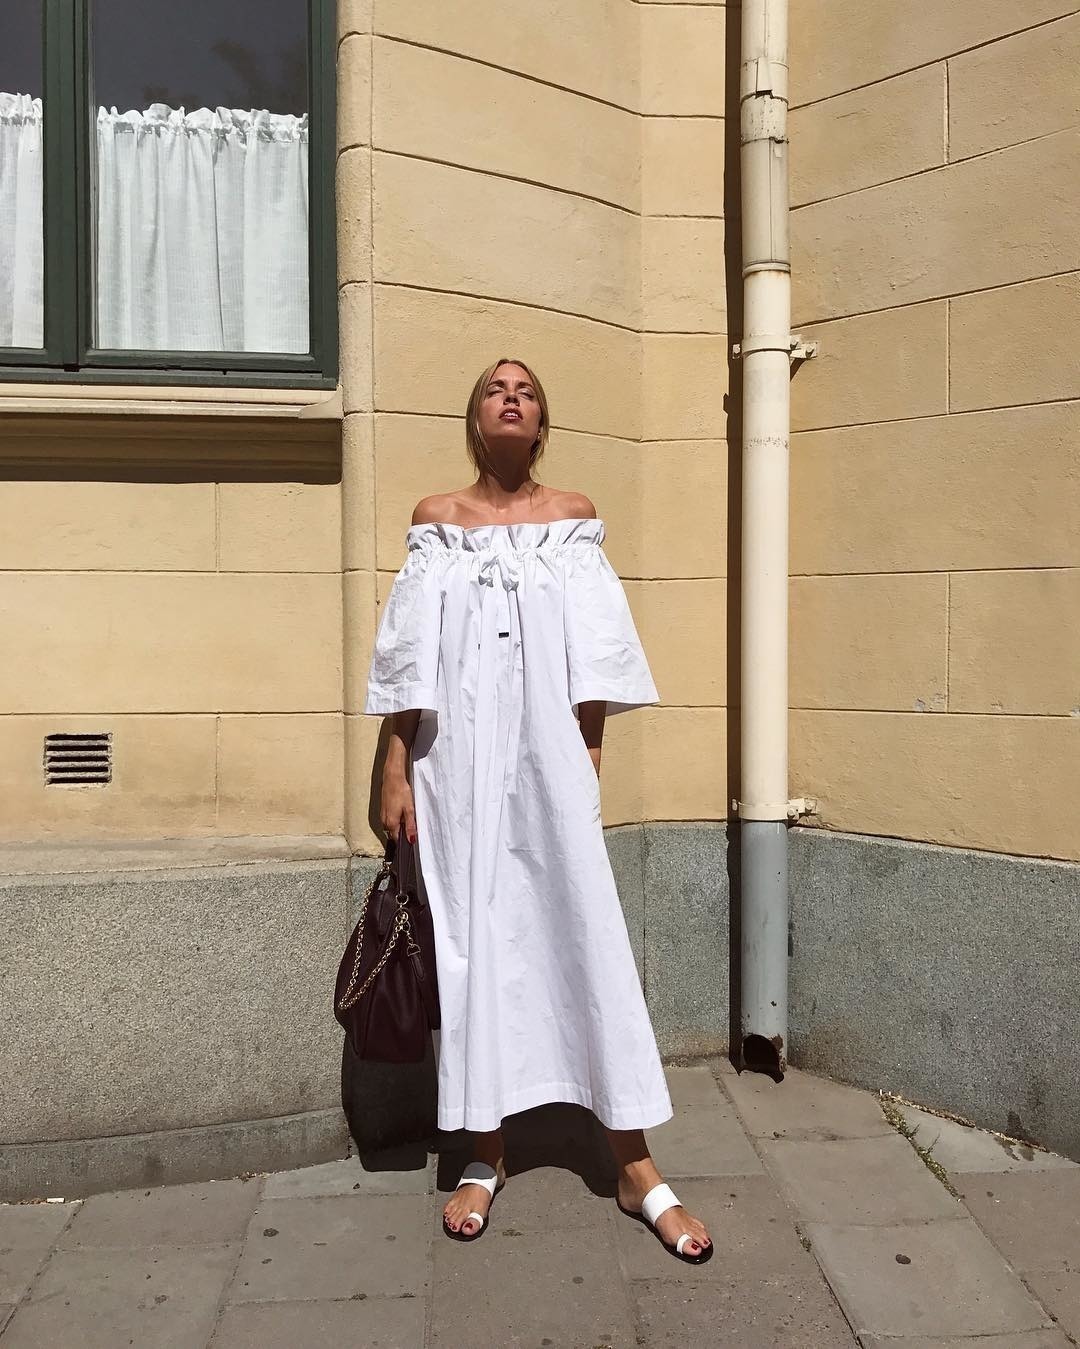 Elbise İkilemi: Uzun Kollu vs. Düşük Omuzlu